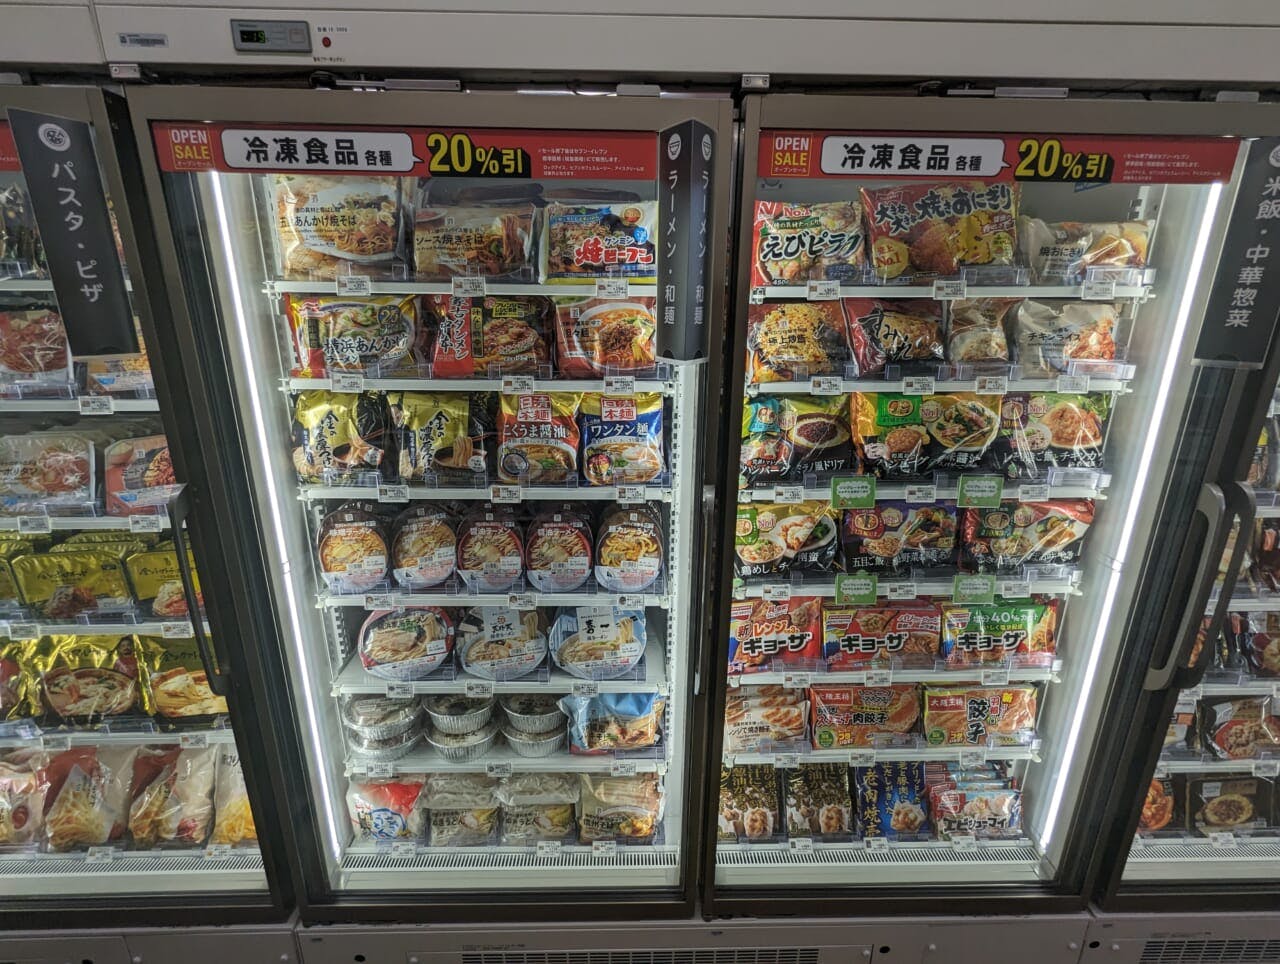 冷凍食品はグループのPBに加えNBの売れ筋も投入